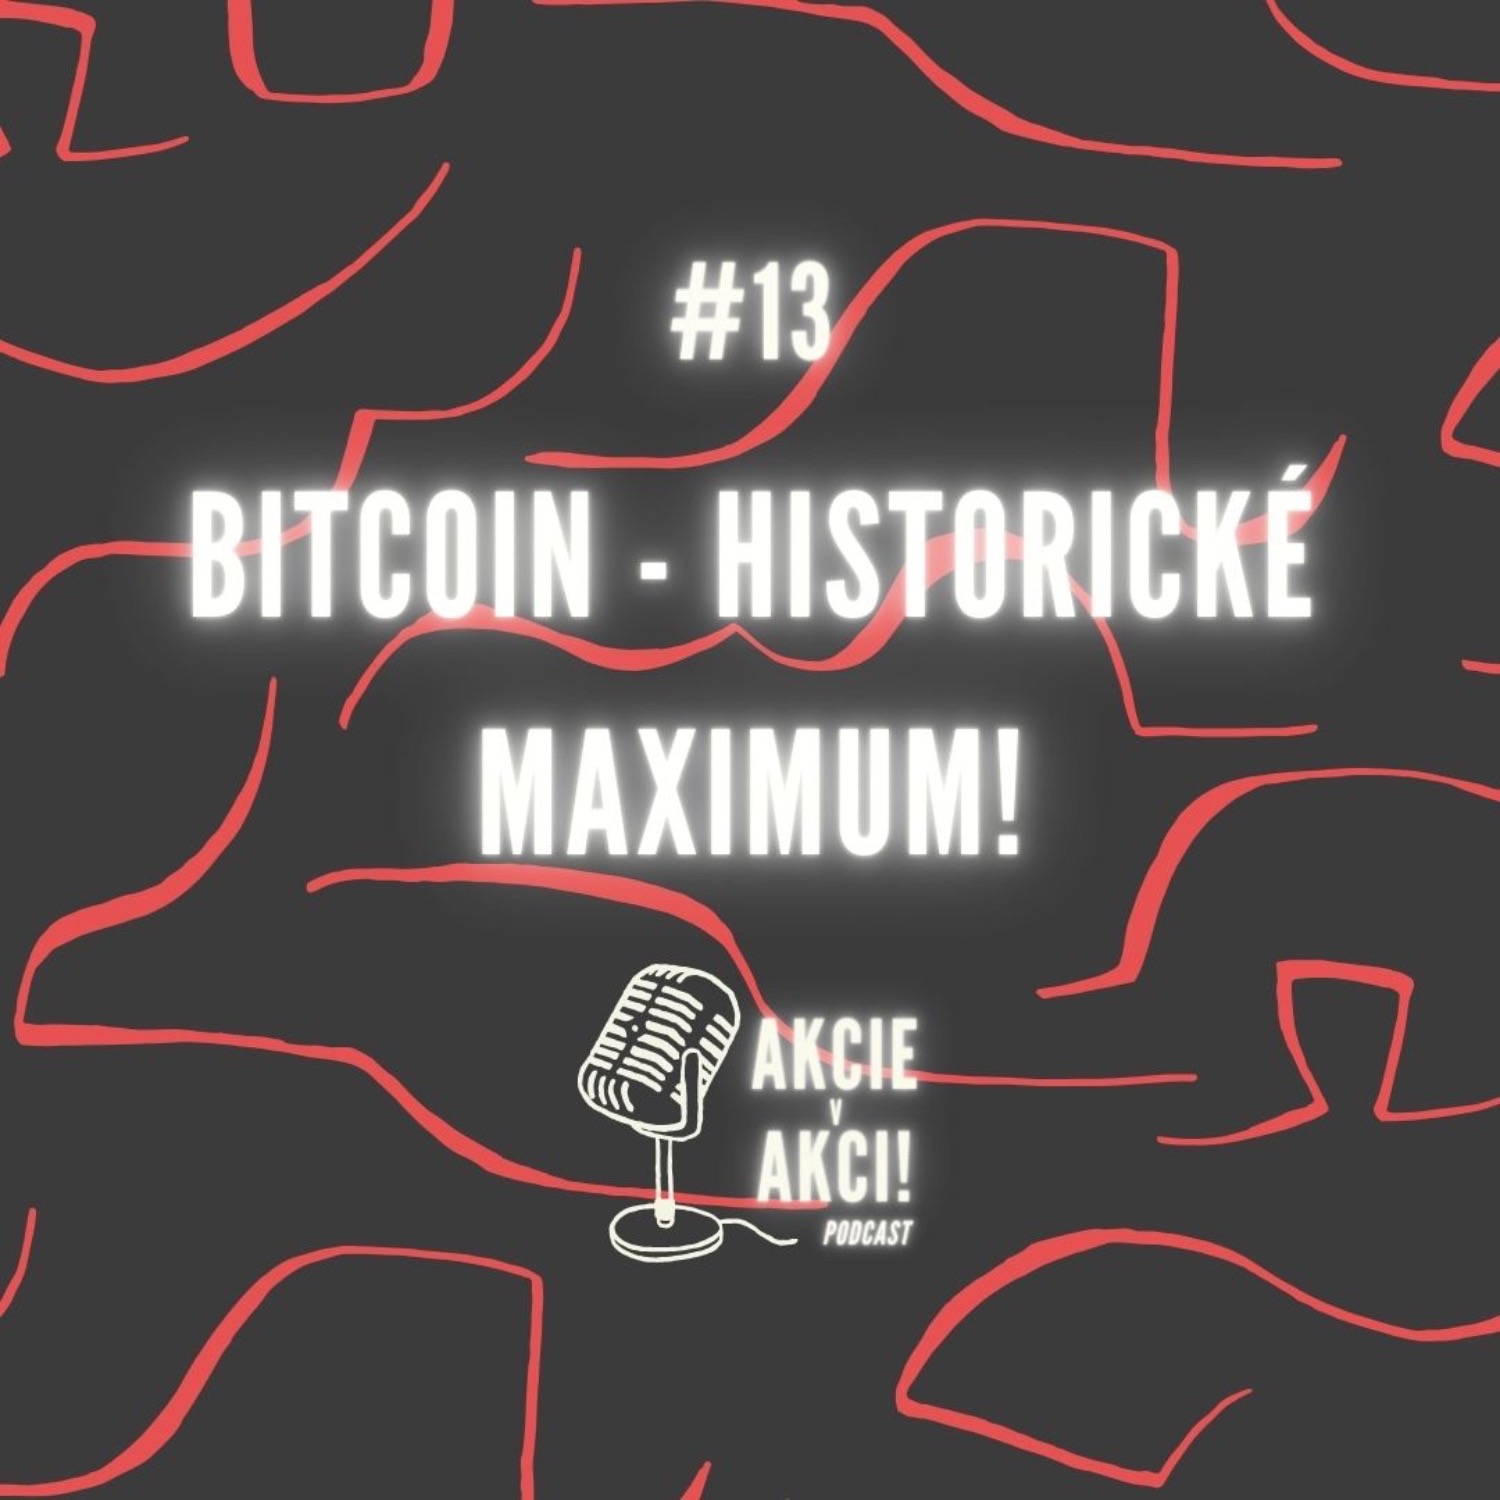 #13 BITCOIN - HISTORICKÉ MAXIMUM!